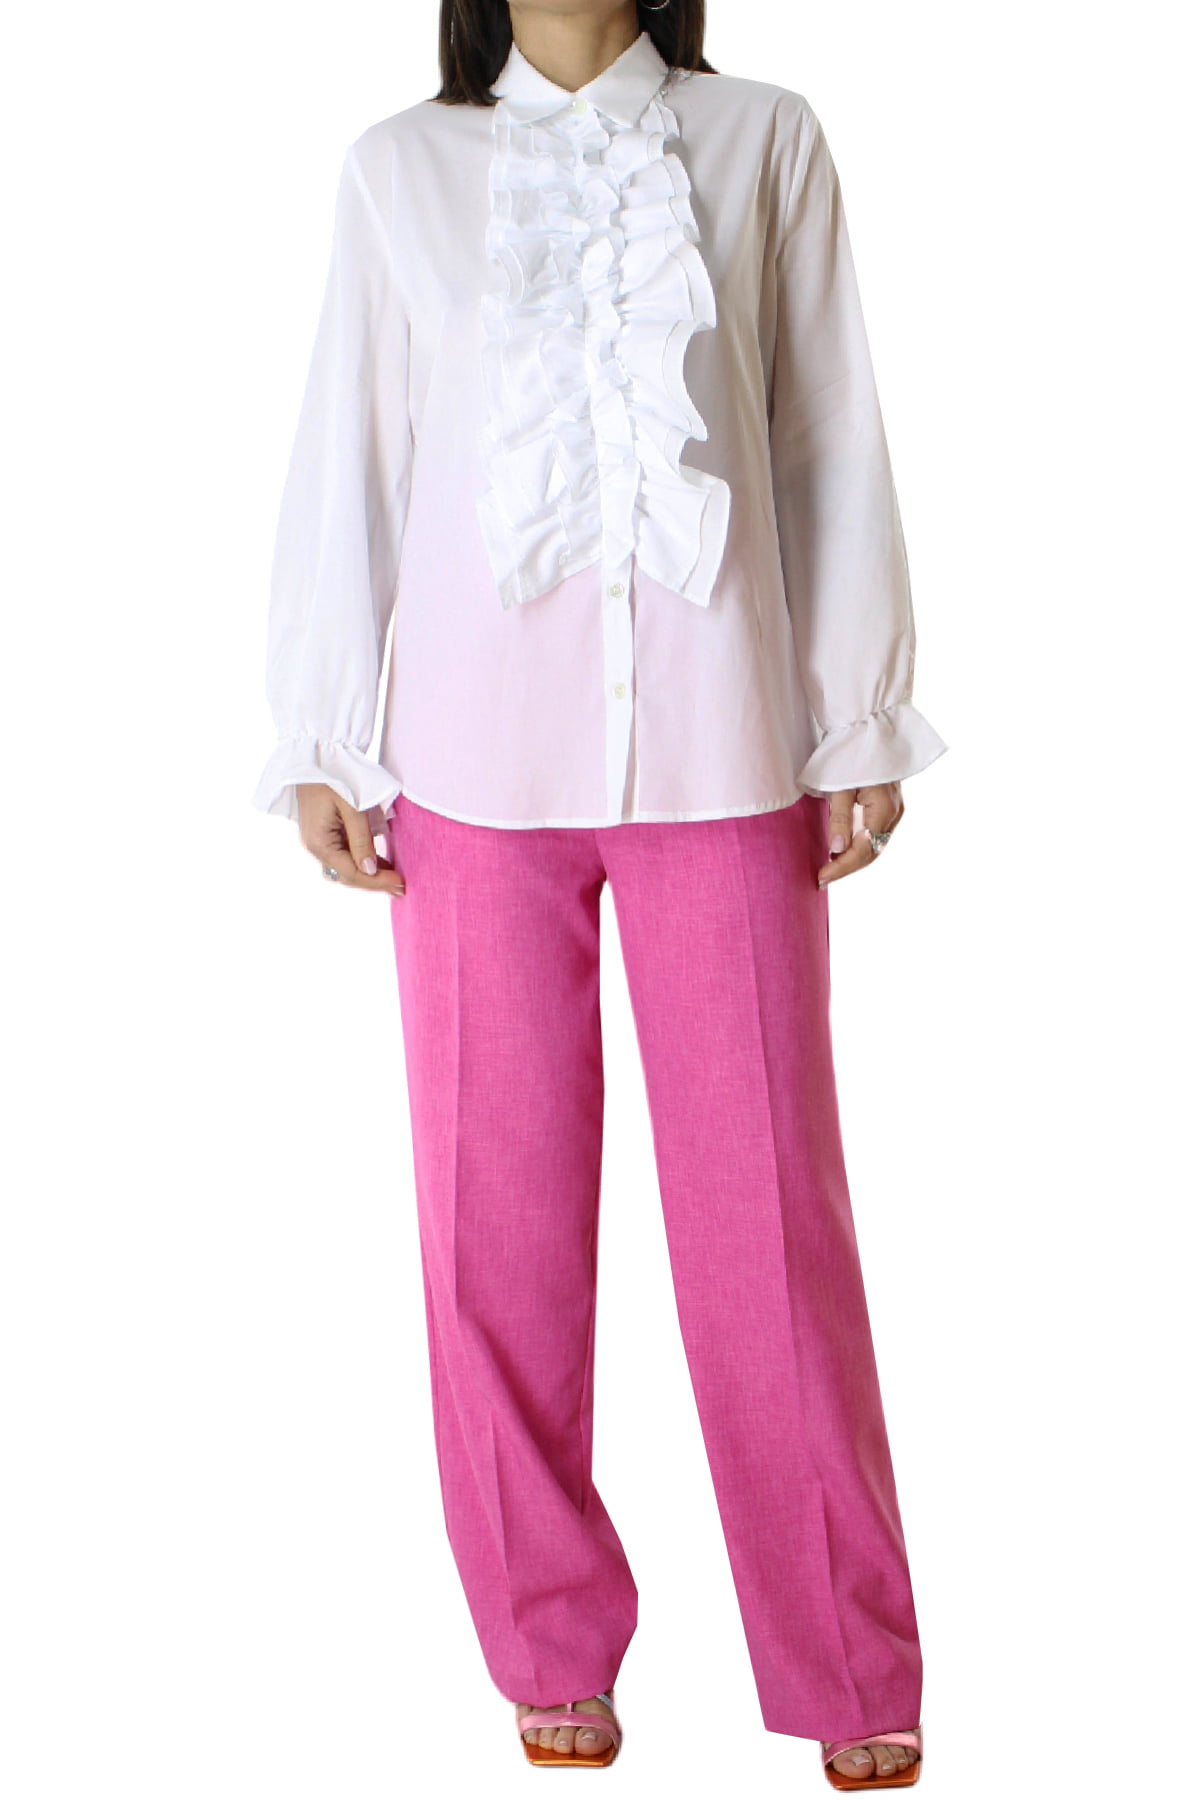 Camicia donna in cotone morbido con rouches davanti e polso vestibilita comoda